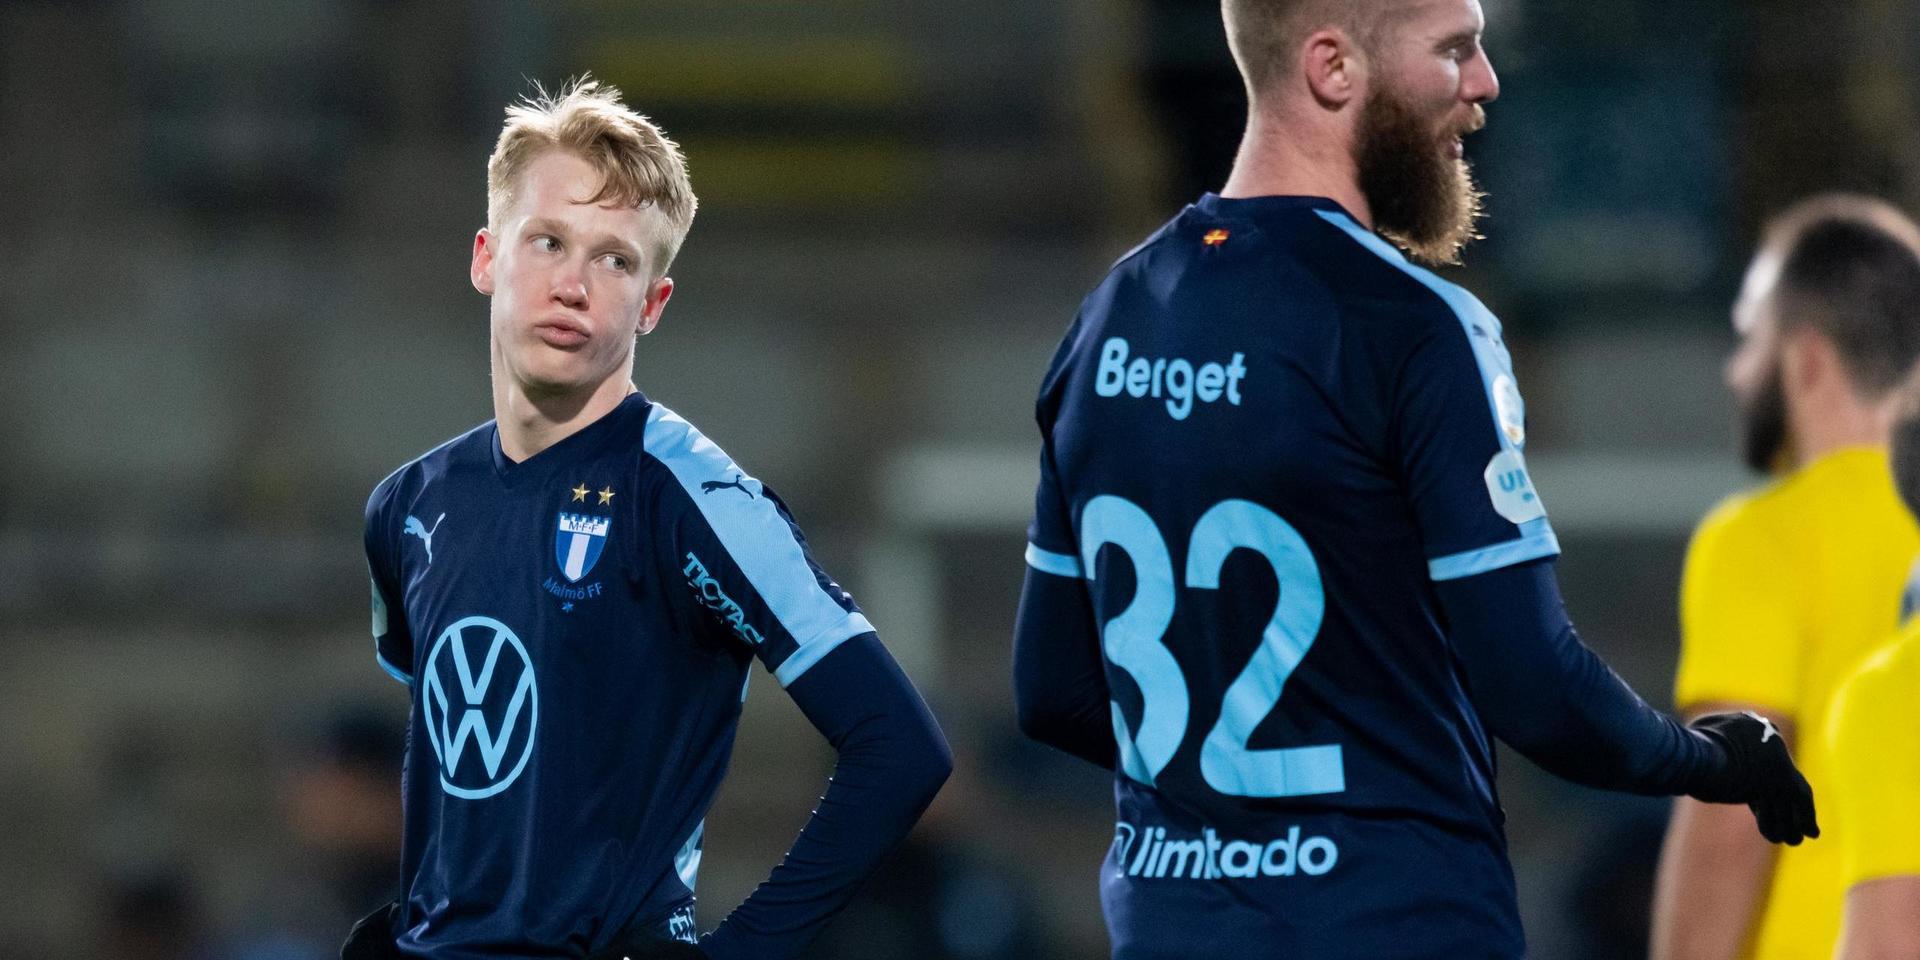 David Edvardsson från Grebbestad fick stort förtroende i Malmö FF under försäsongen. Men en hjärnskakning har hållit honom borta den senaste tiden.